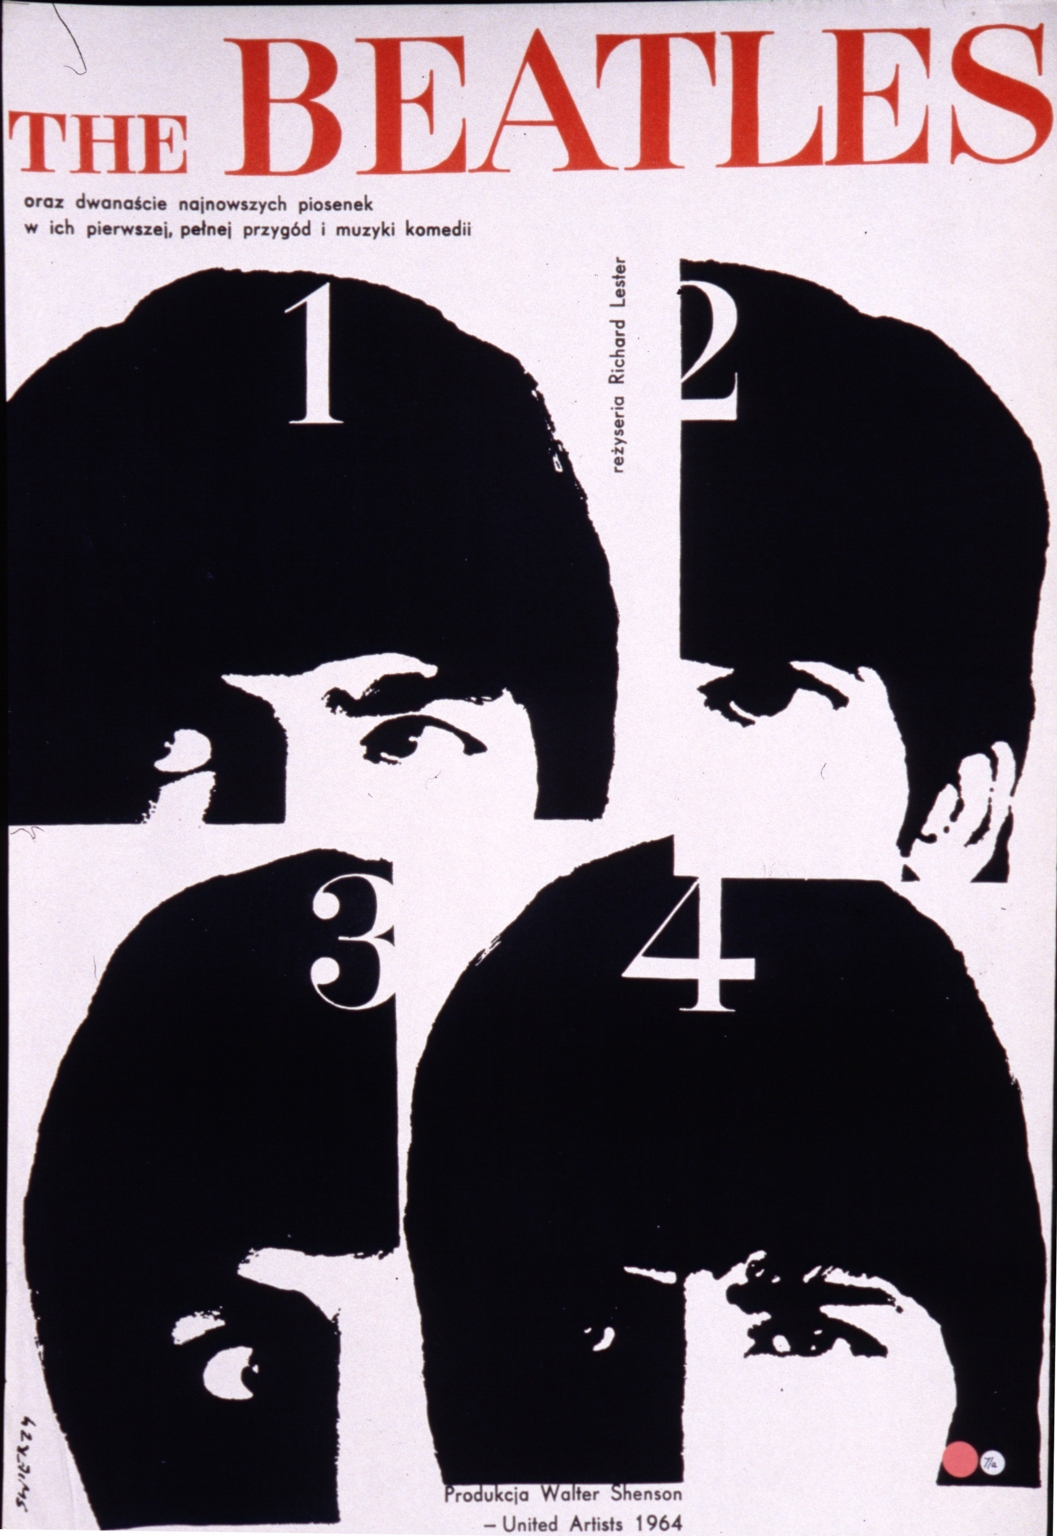 The Beatles: oraz dwanascie najnowszych piosenek w ich pierwszej pelnej przygod i muzyki komedii